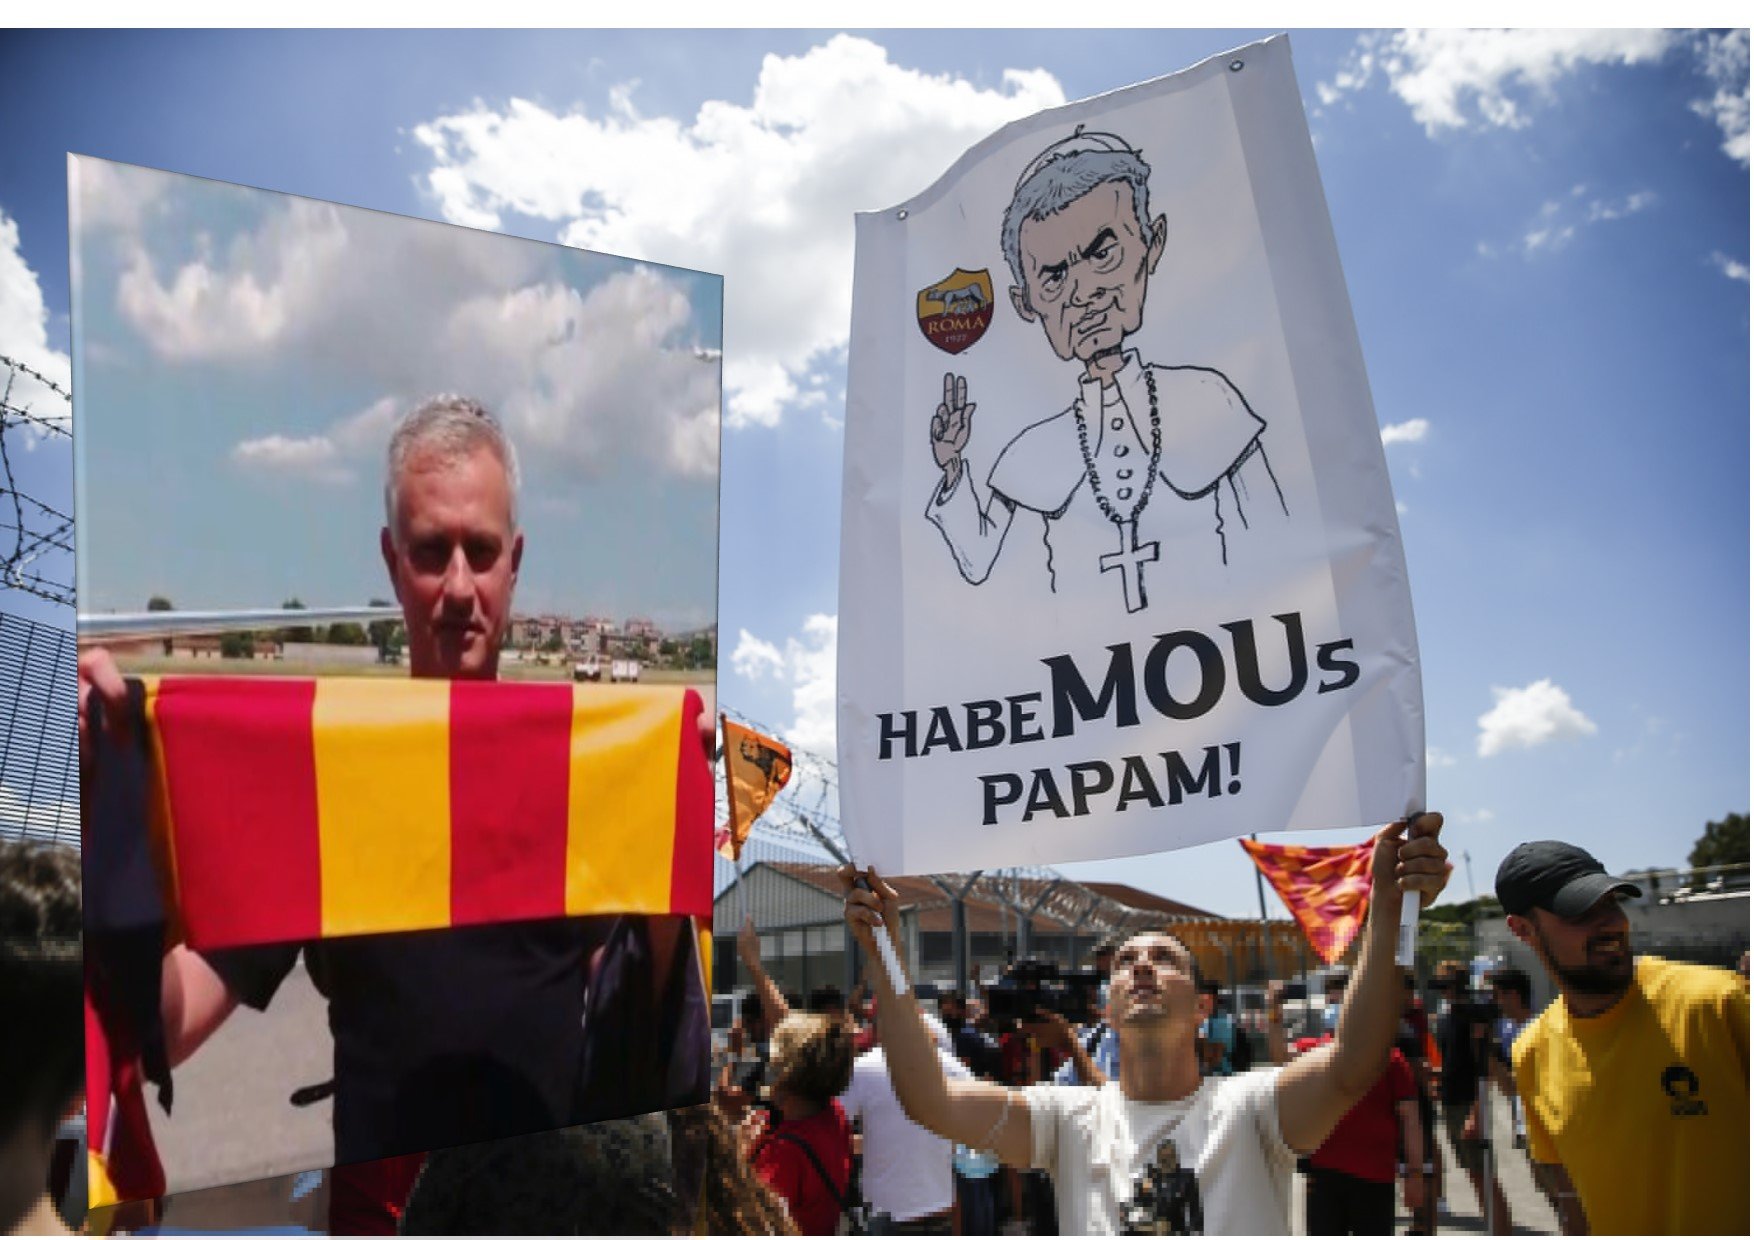 Folie totale à l’aéroport: « Le Pape » Mourinho est arrivé à Rome (Images)